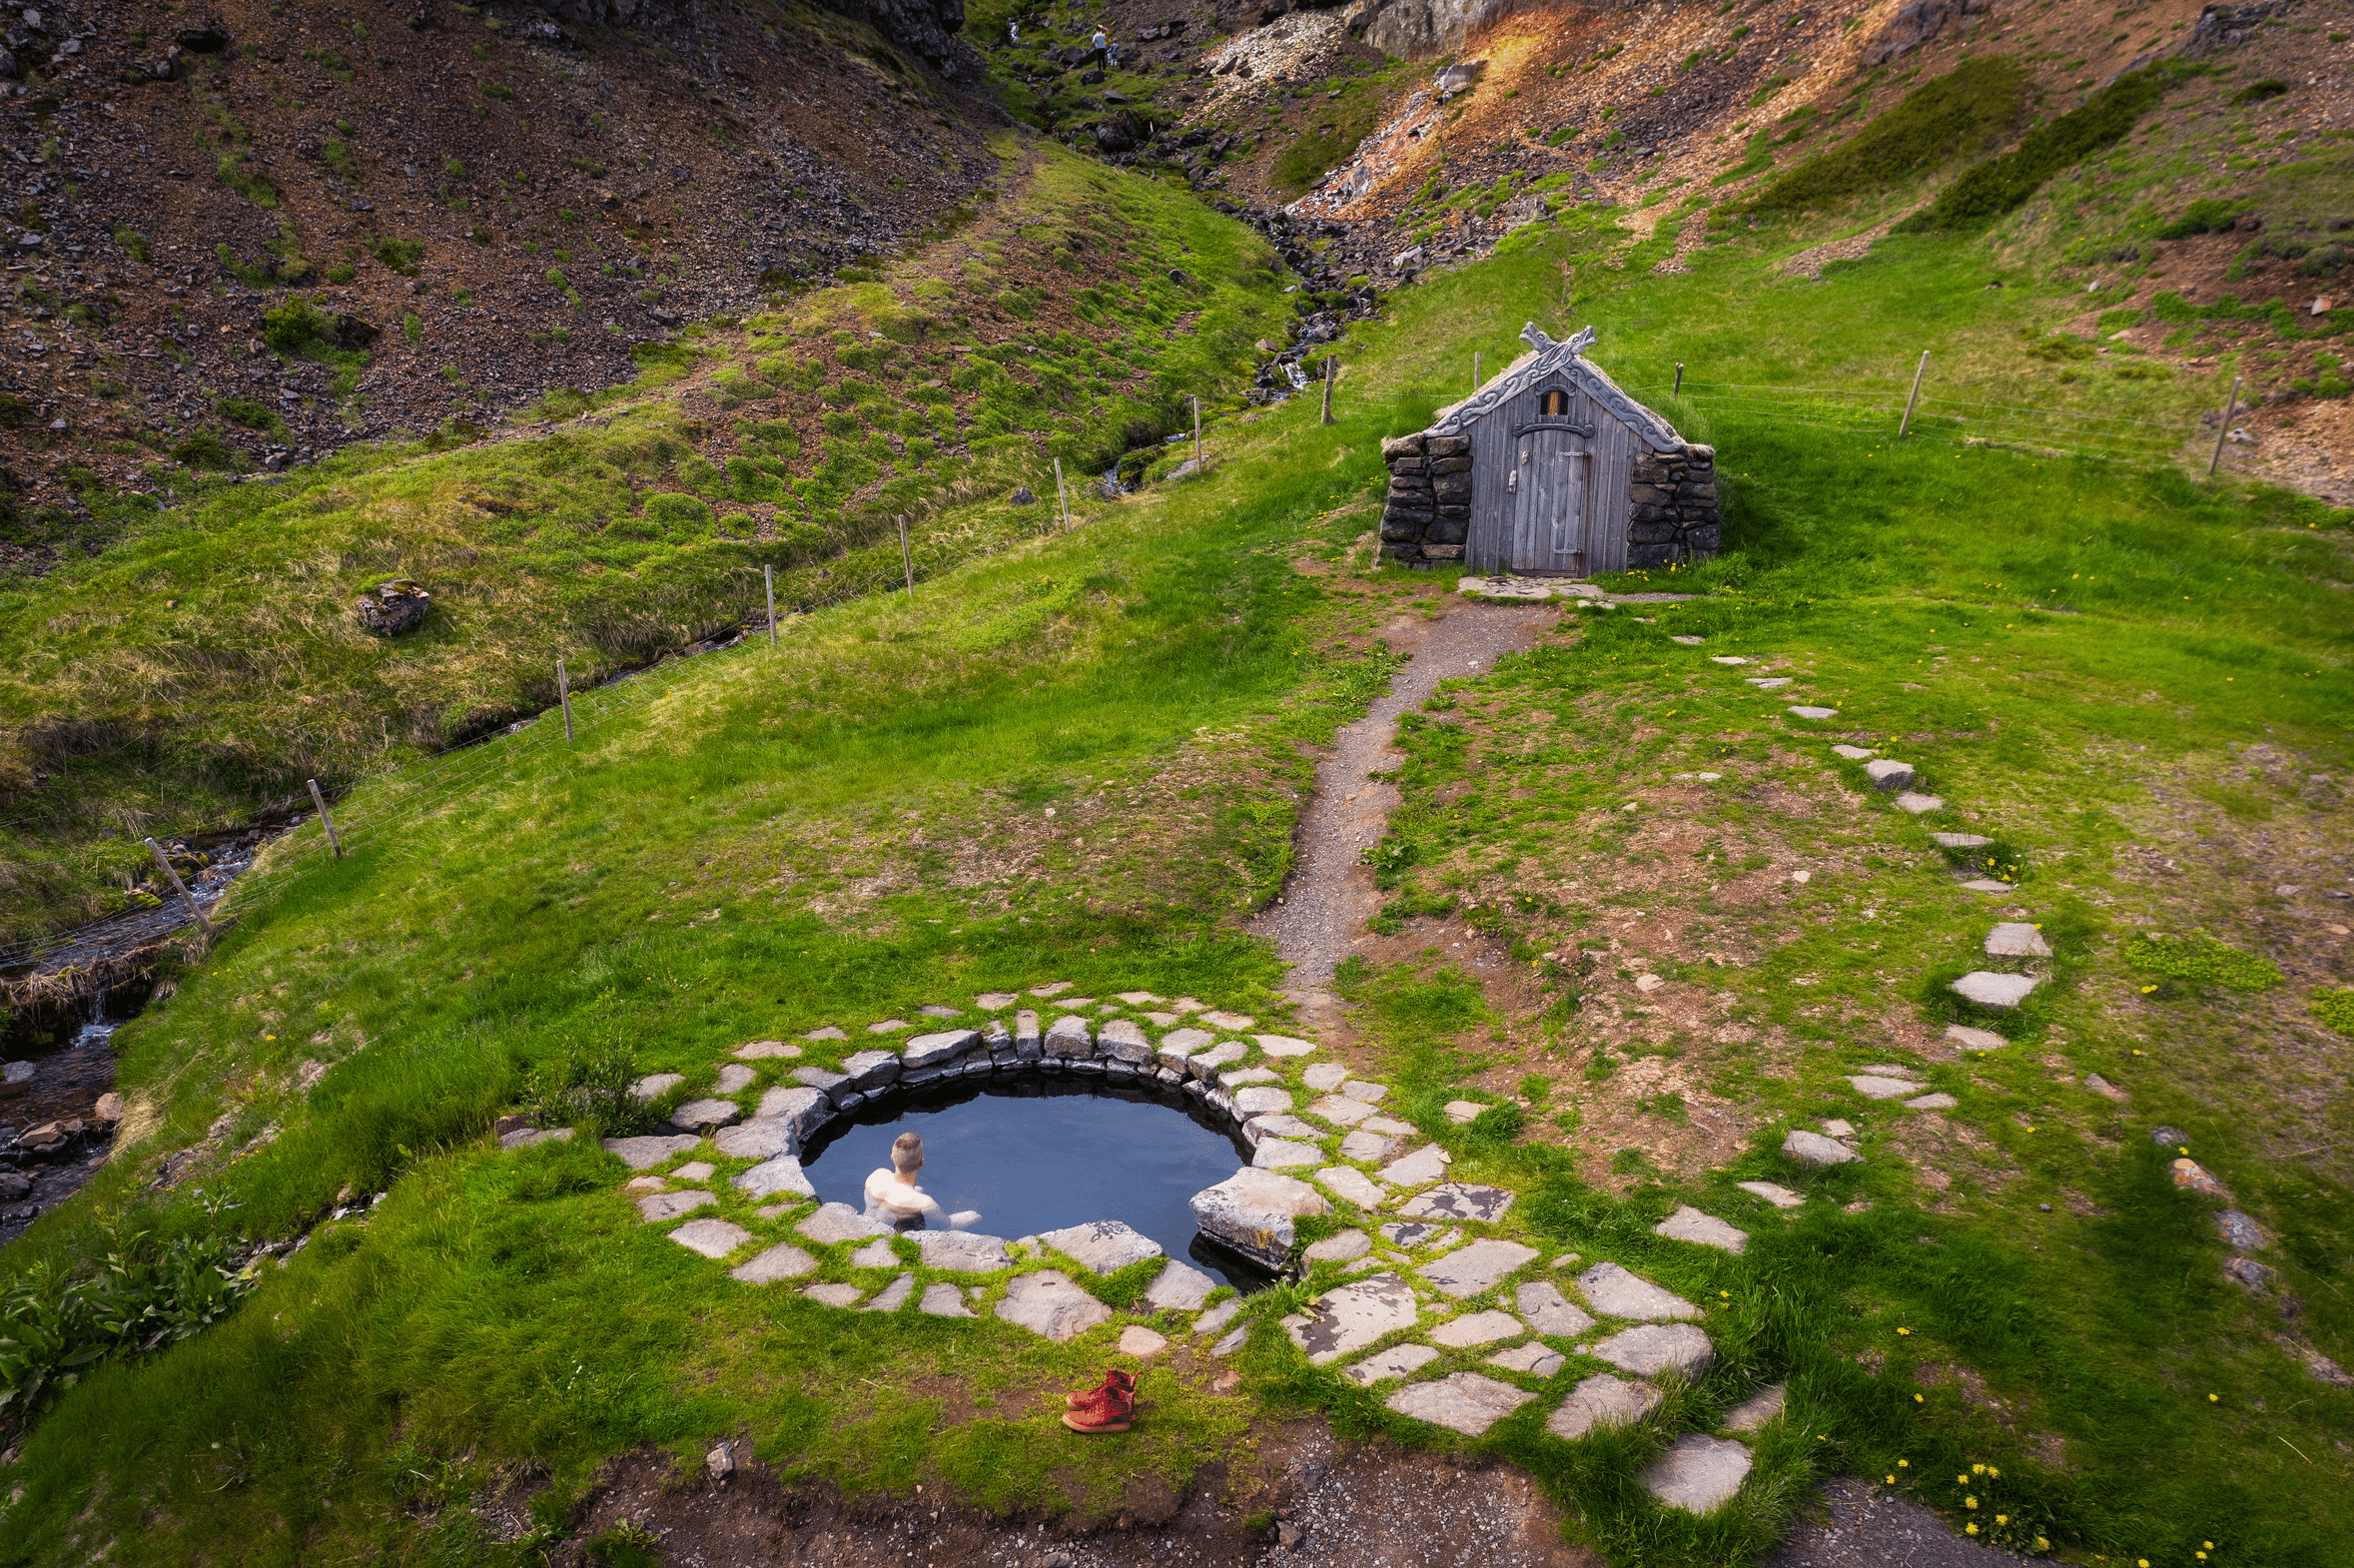 Una mujer relajándose en la piscina Gudrunarlaug en el oeste de Islandia, una pequeña casa turh cercana.